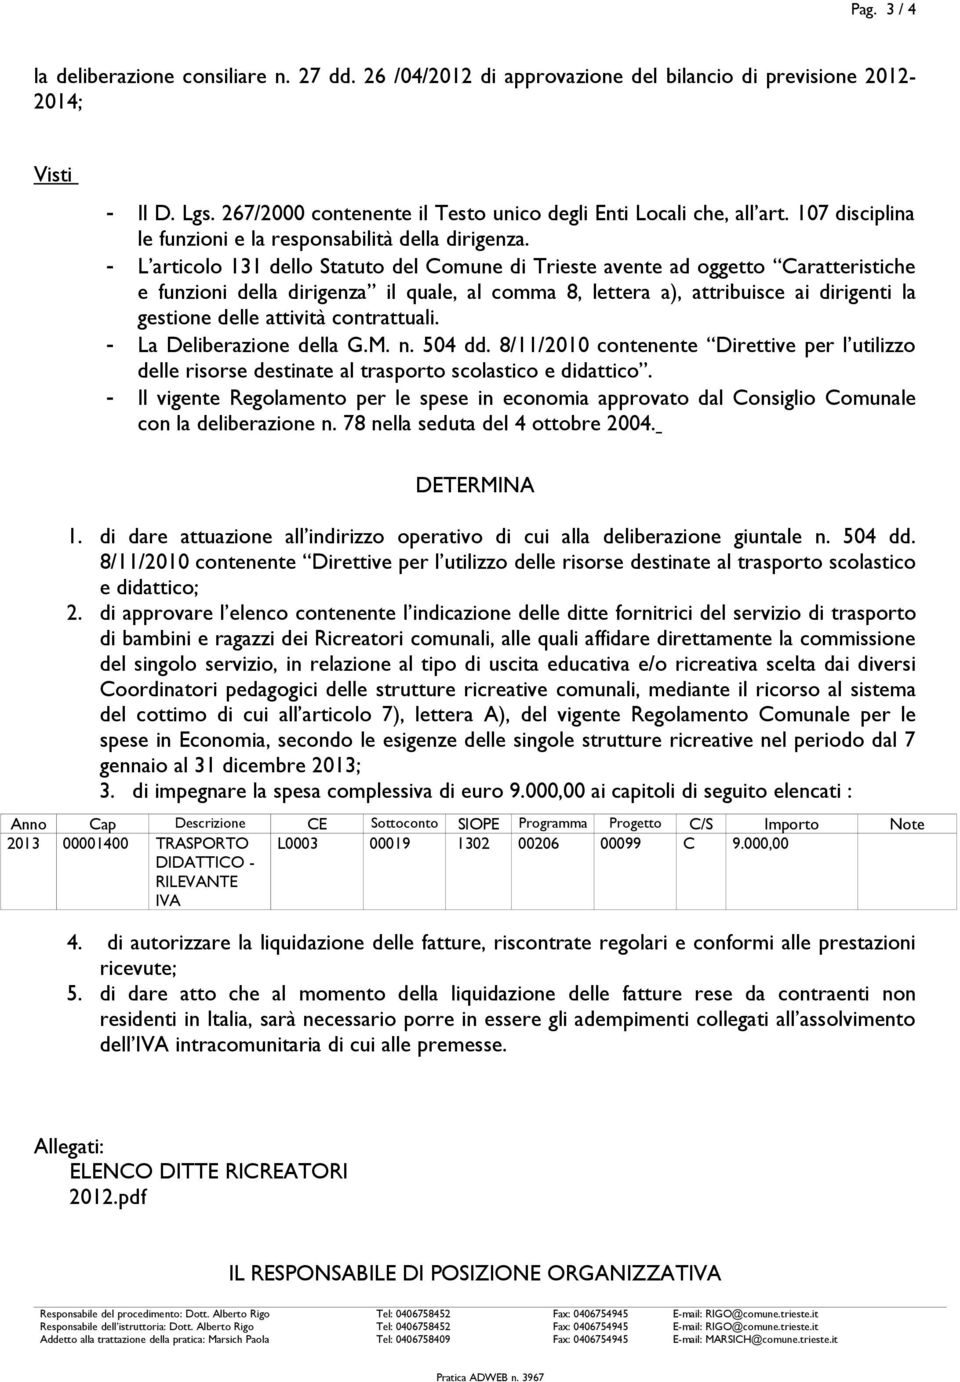 - L articolo 131 dello Statuto del Comune di Trieste avente ad oggetto Caratteristiche e funzioni della dirigenza il quale, al comma 8, lettera a), attribuisce ai dirigenti la gestione delle attività